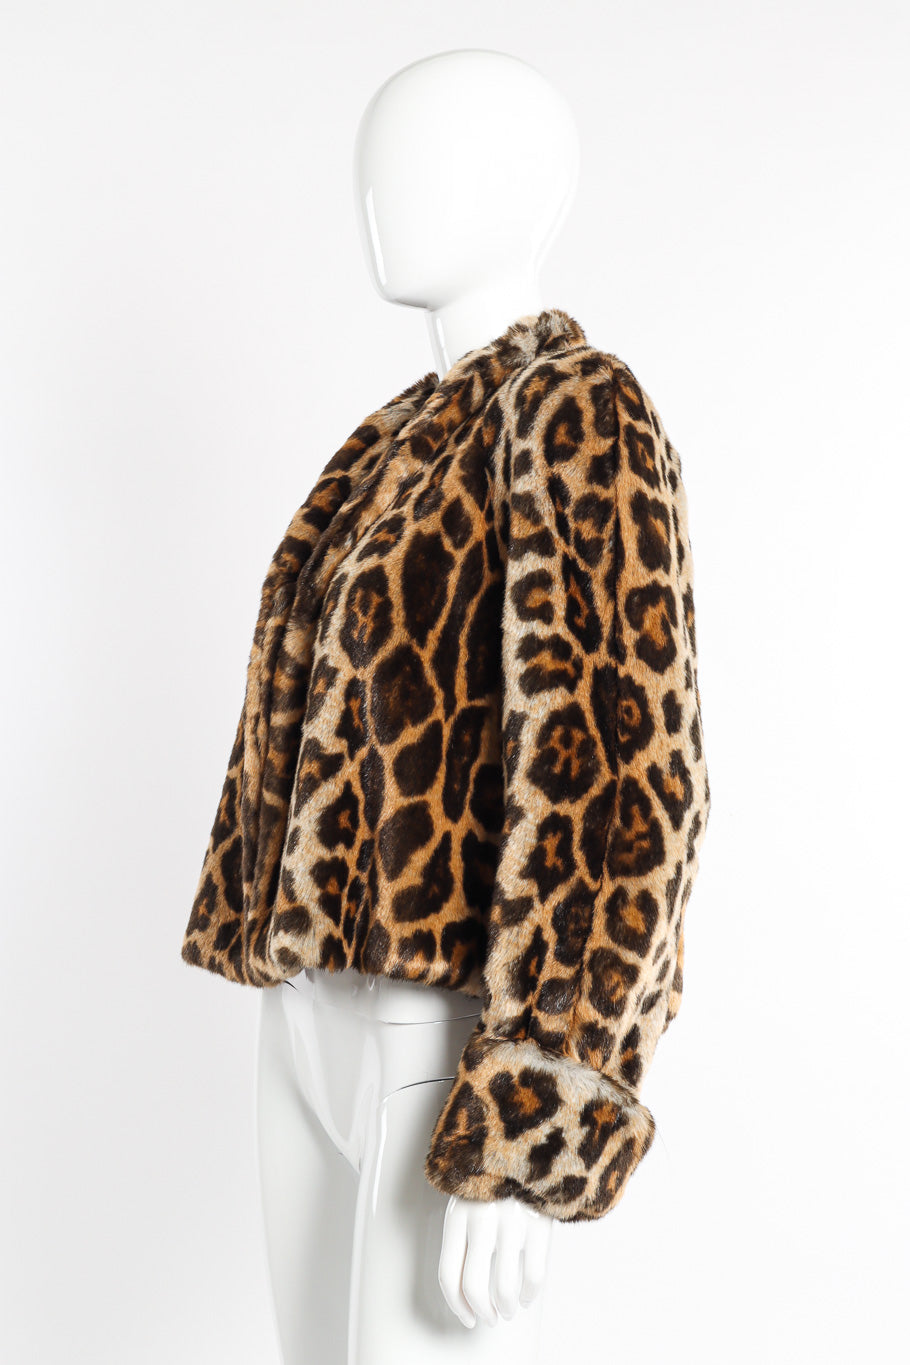 Vintage Mondi Leopard Print Faux Fur Jacket side view on mannequin @recessla